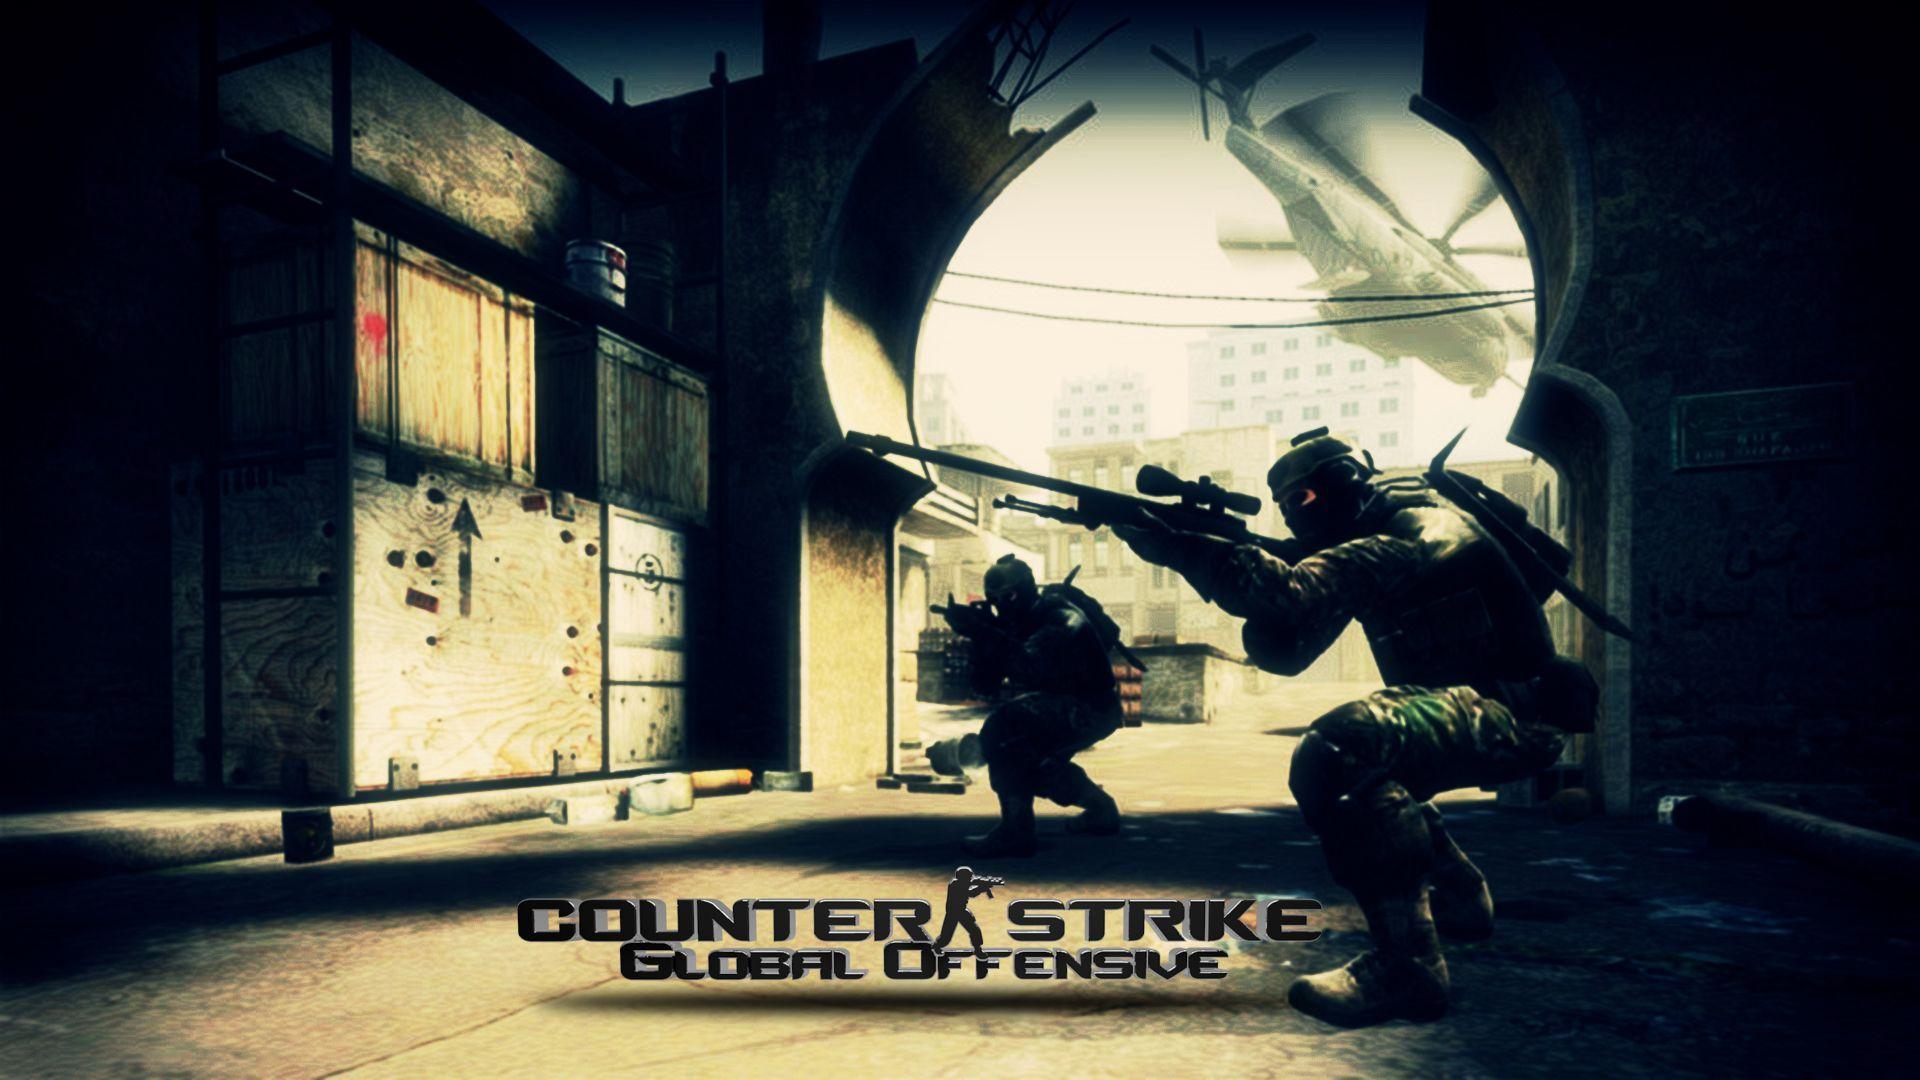 Counter Strike Wallpaper GameHDWall.com Video Games Wallpaper